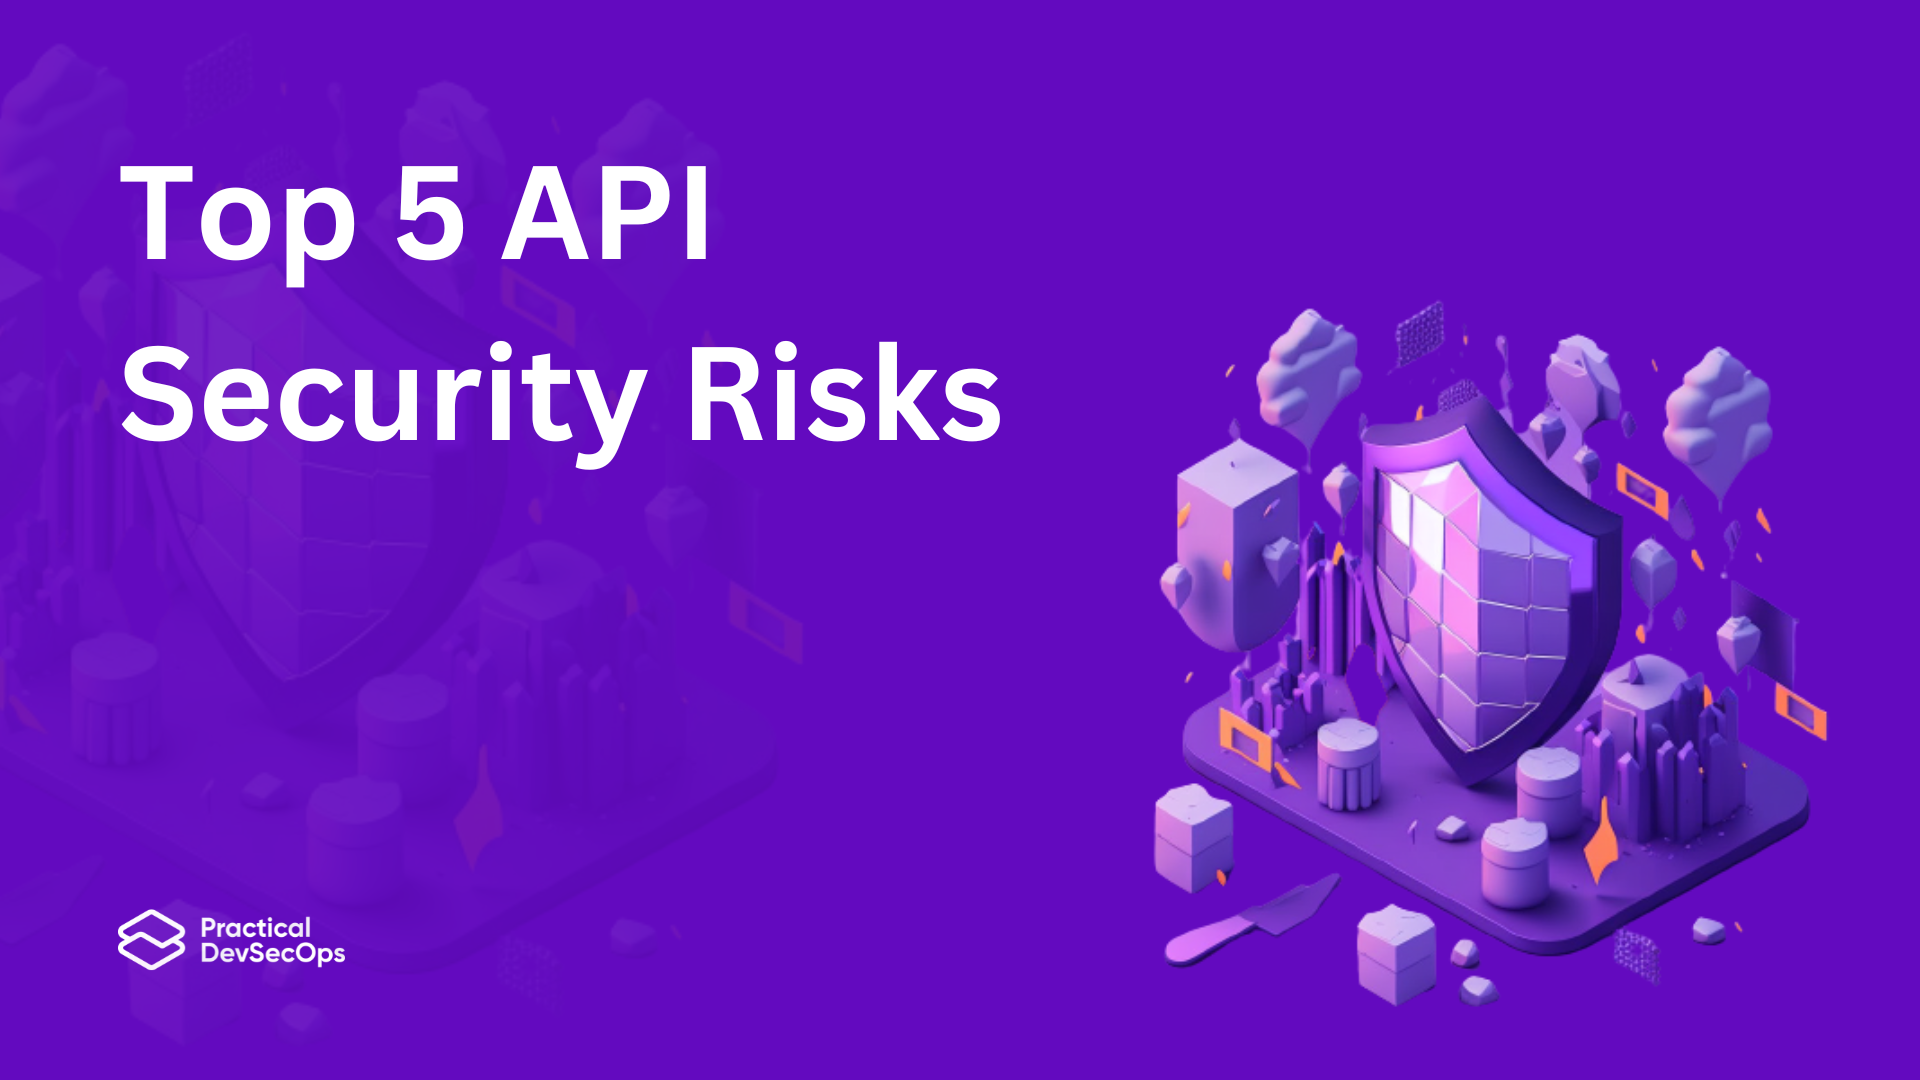 Top 5 API Security Risks